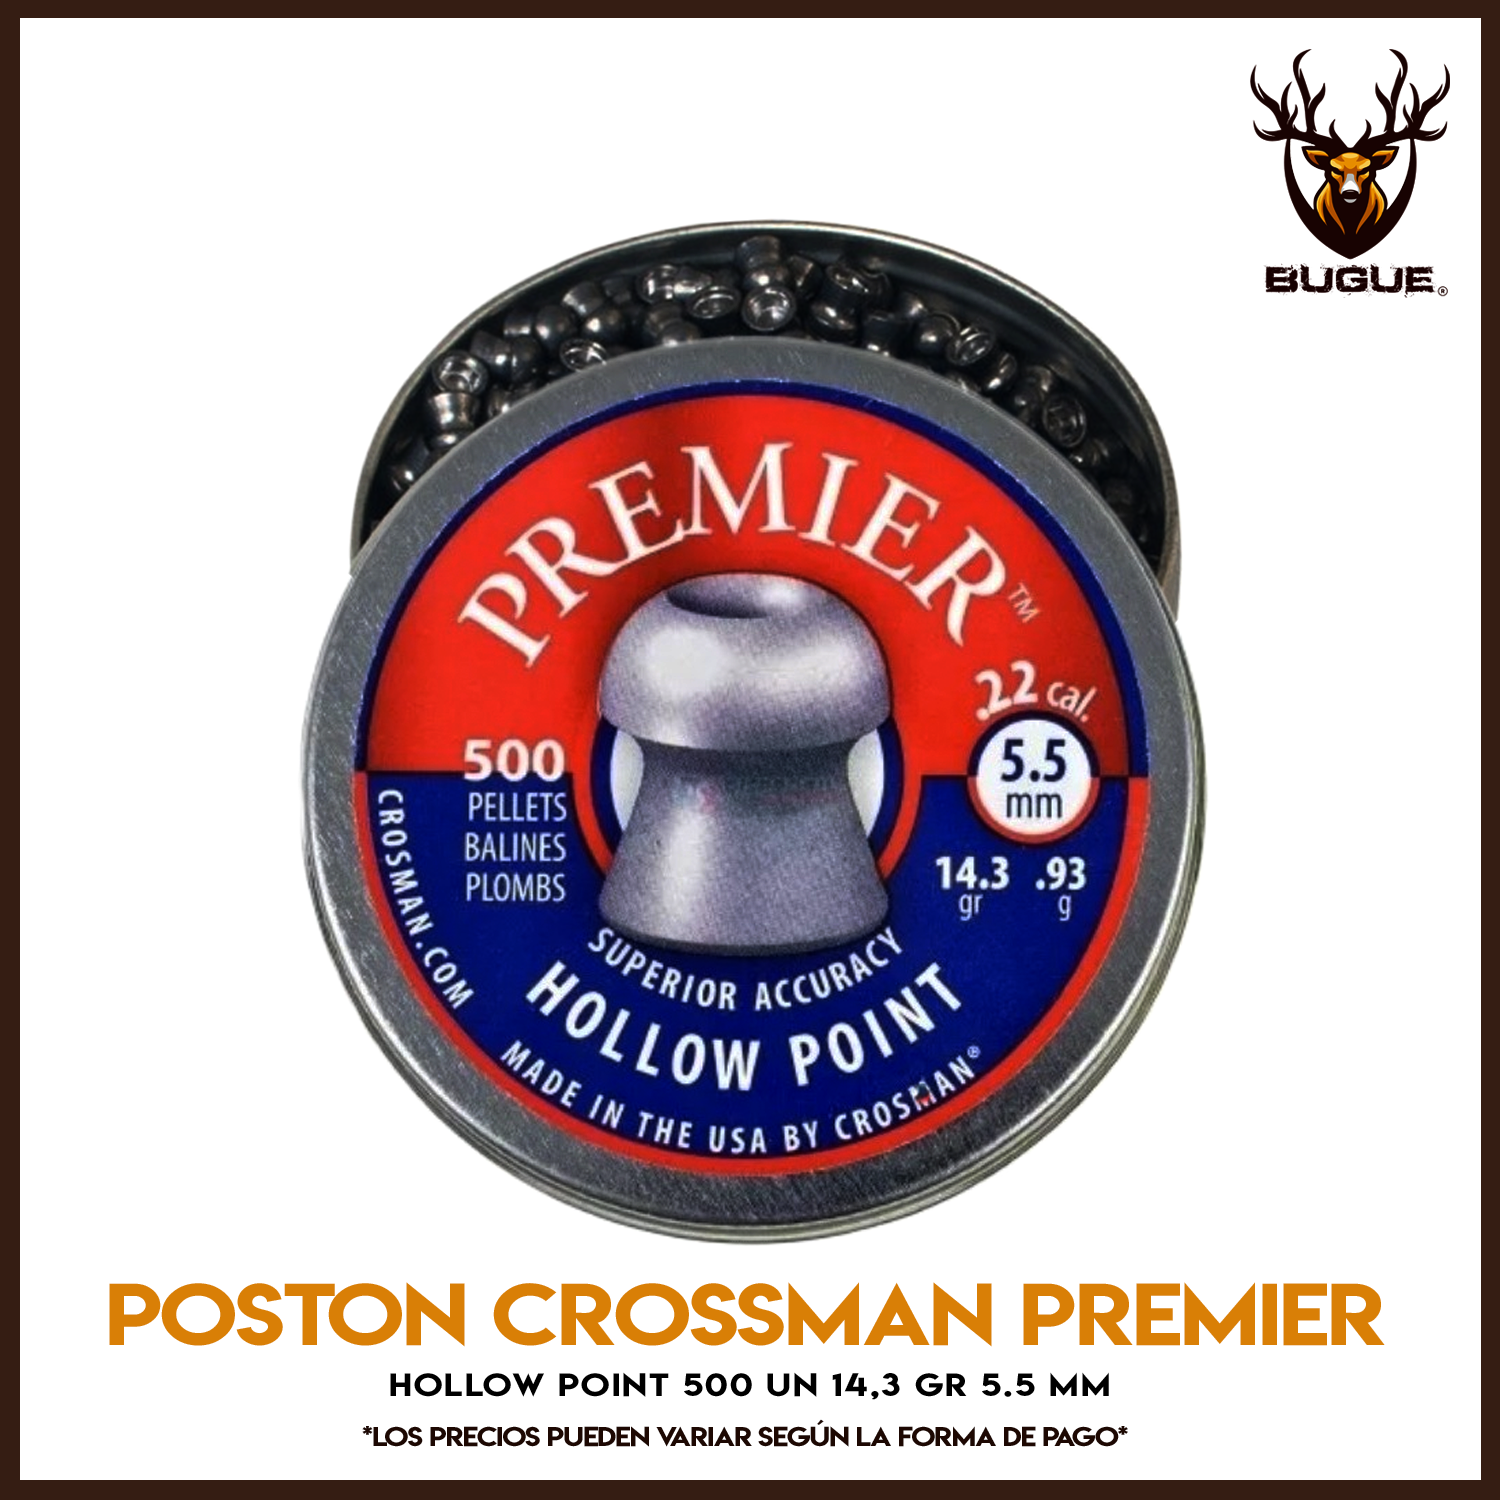 POSTON CROSSMAN PREMIER HOLLOW POINT 500 UN 14,3 GR 5.5 MM